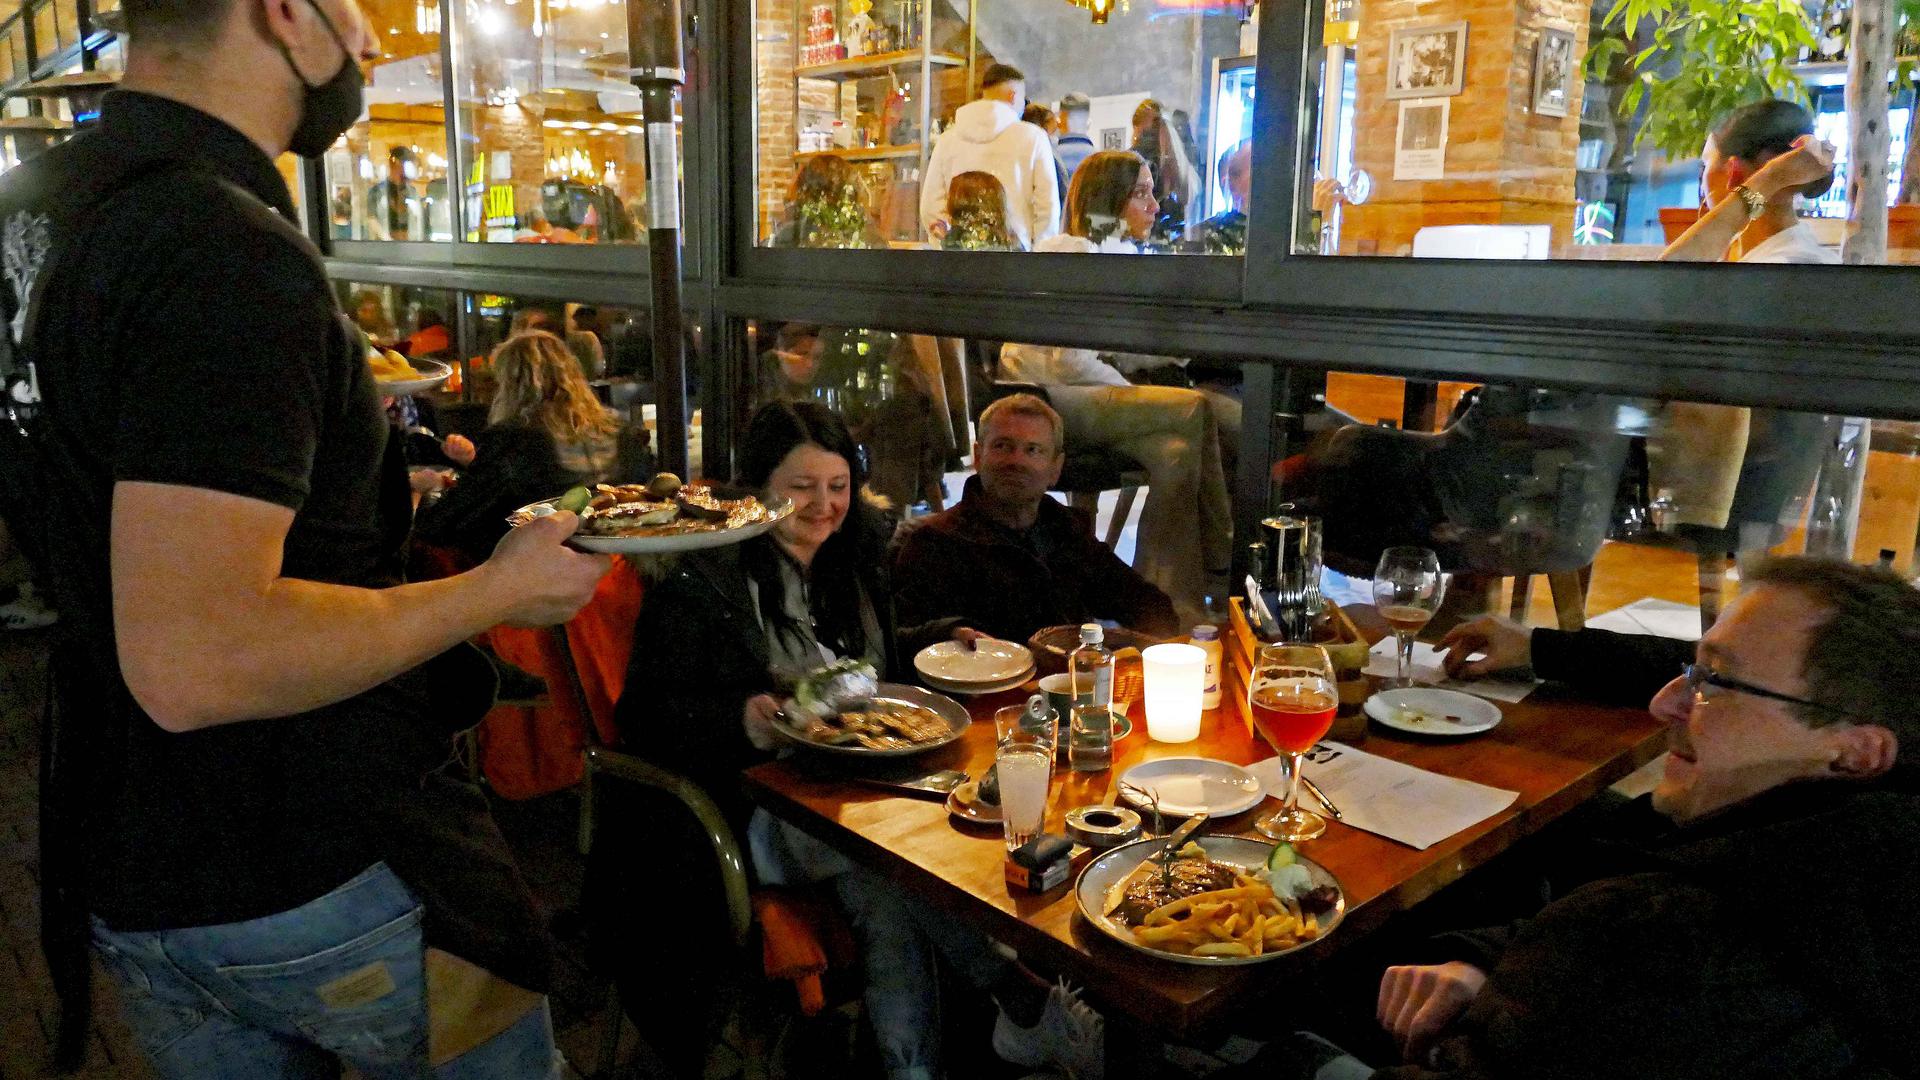 Alle Hände voll zu tun. Es ist viel los am Samstagabend in der Pforzheimer Innenstadt. Die Menschen genießen nochmals das gemeinsame Essen im Restaurant, wie hier beim Griechen am Marktplatz.